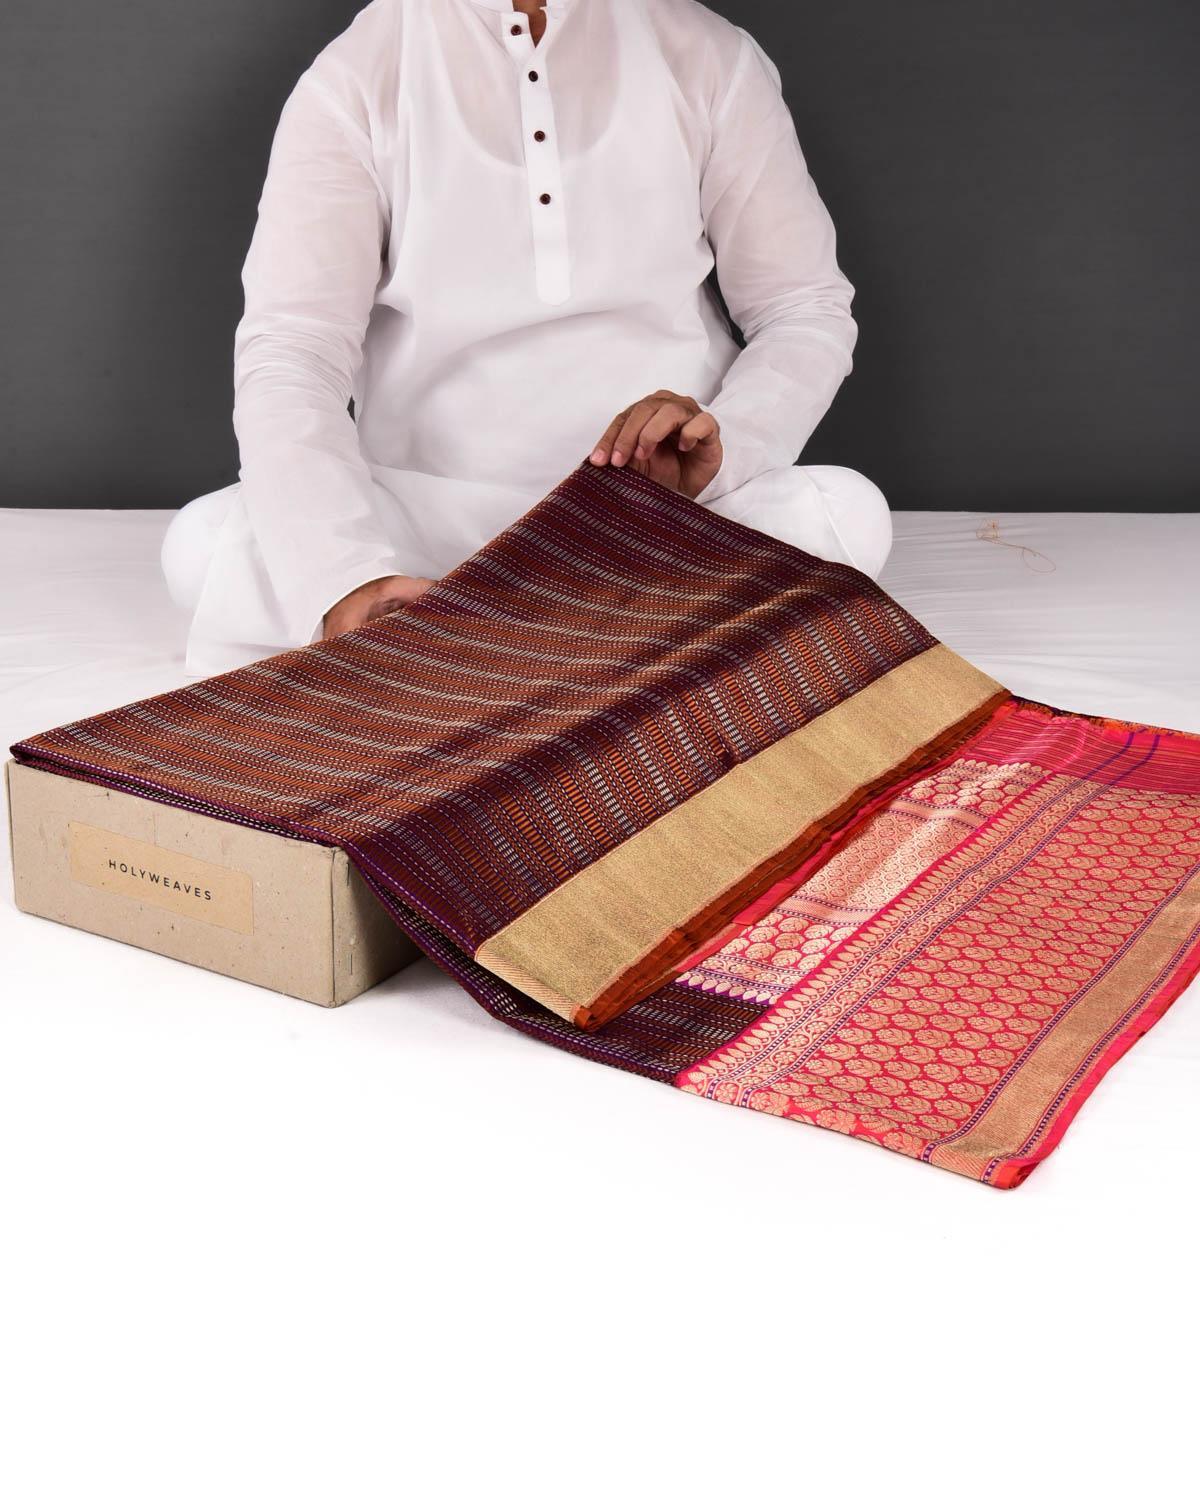 Shot Chocolate Brown Banarasi Resham Geometrical Stripes Brocade Handwoven Katan Silk Saree - By HolyWeaves, Benares